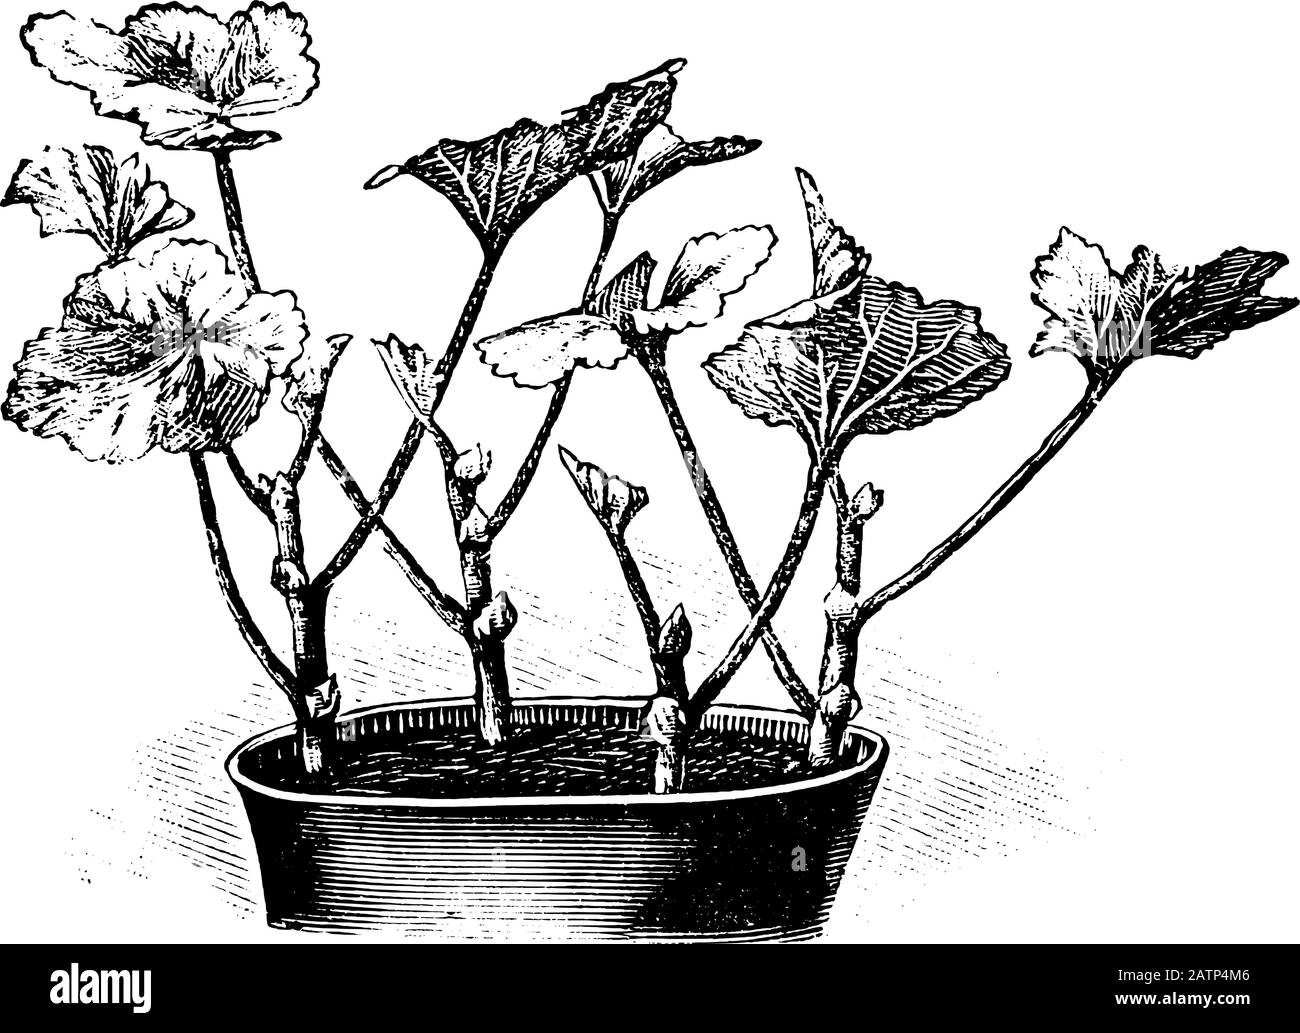 Antica linea d'arte vintage illustrazione, incisione o disegno di tagli di piante di Pelargonio in vaso di fiori, propagazione e clonazione . Da prenotare Piante in camera, Praga, 1898. Illustrazione Vettoriale